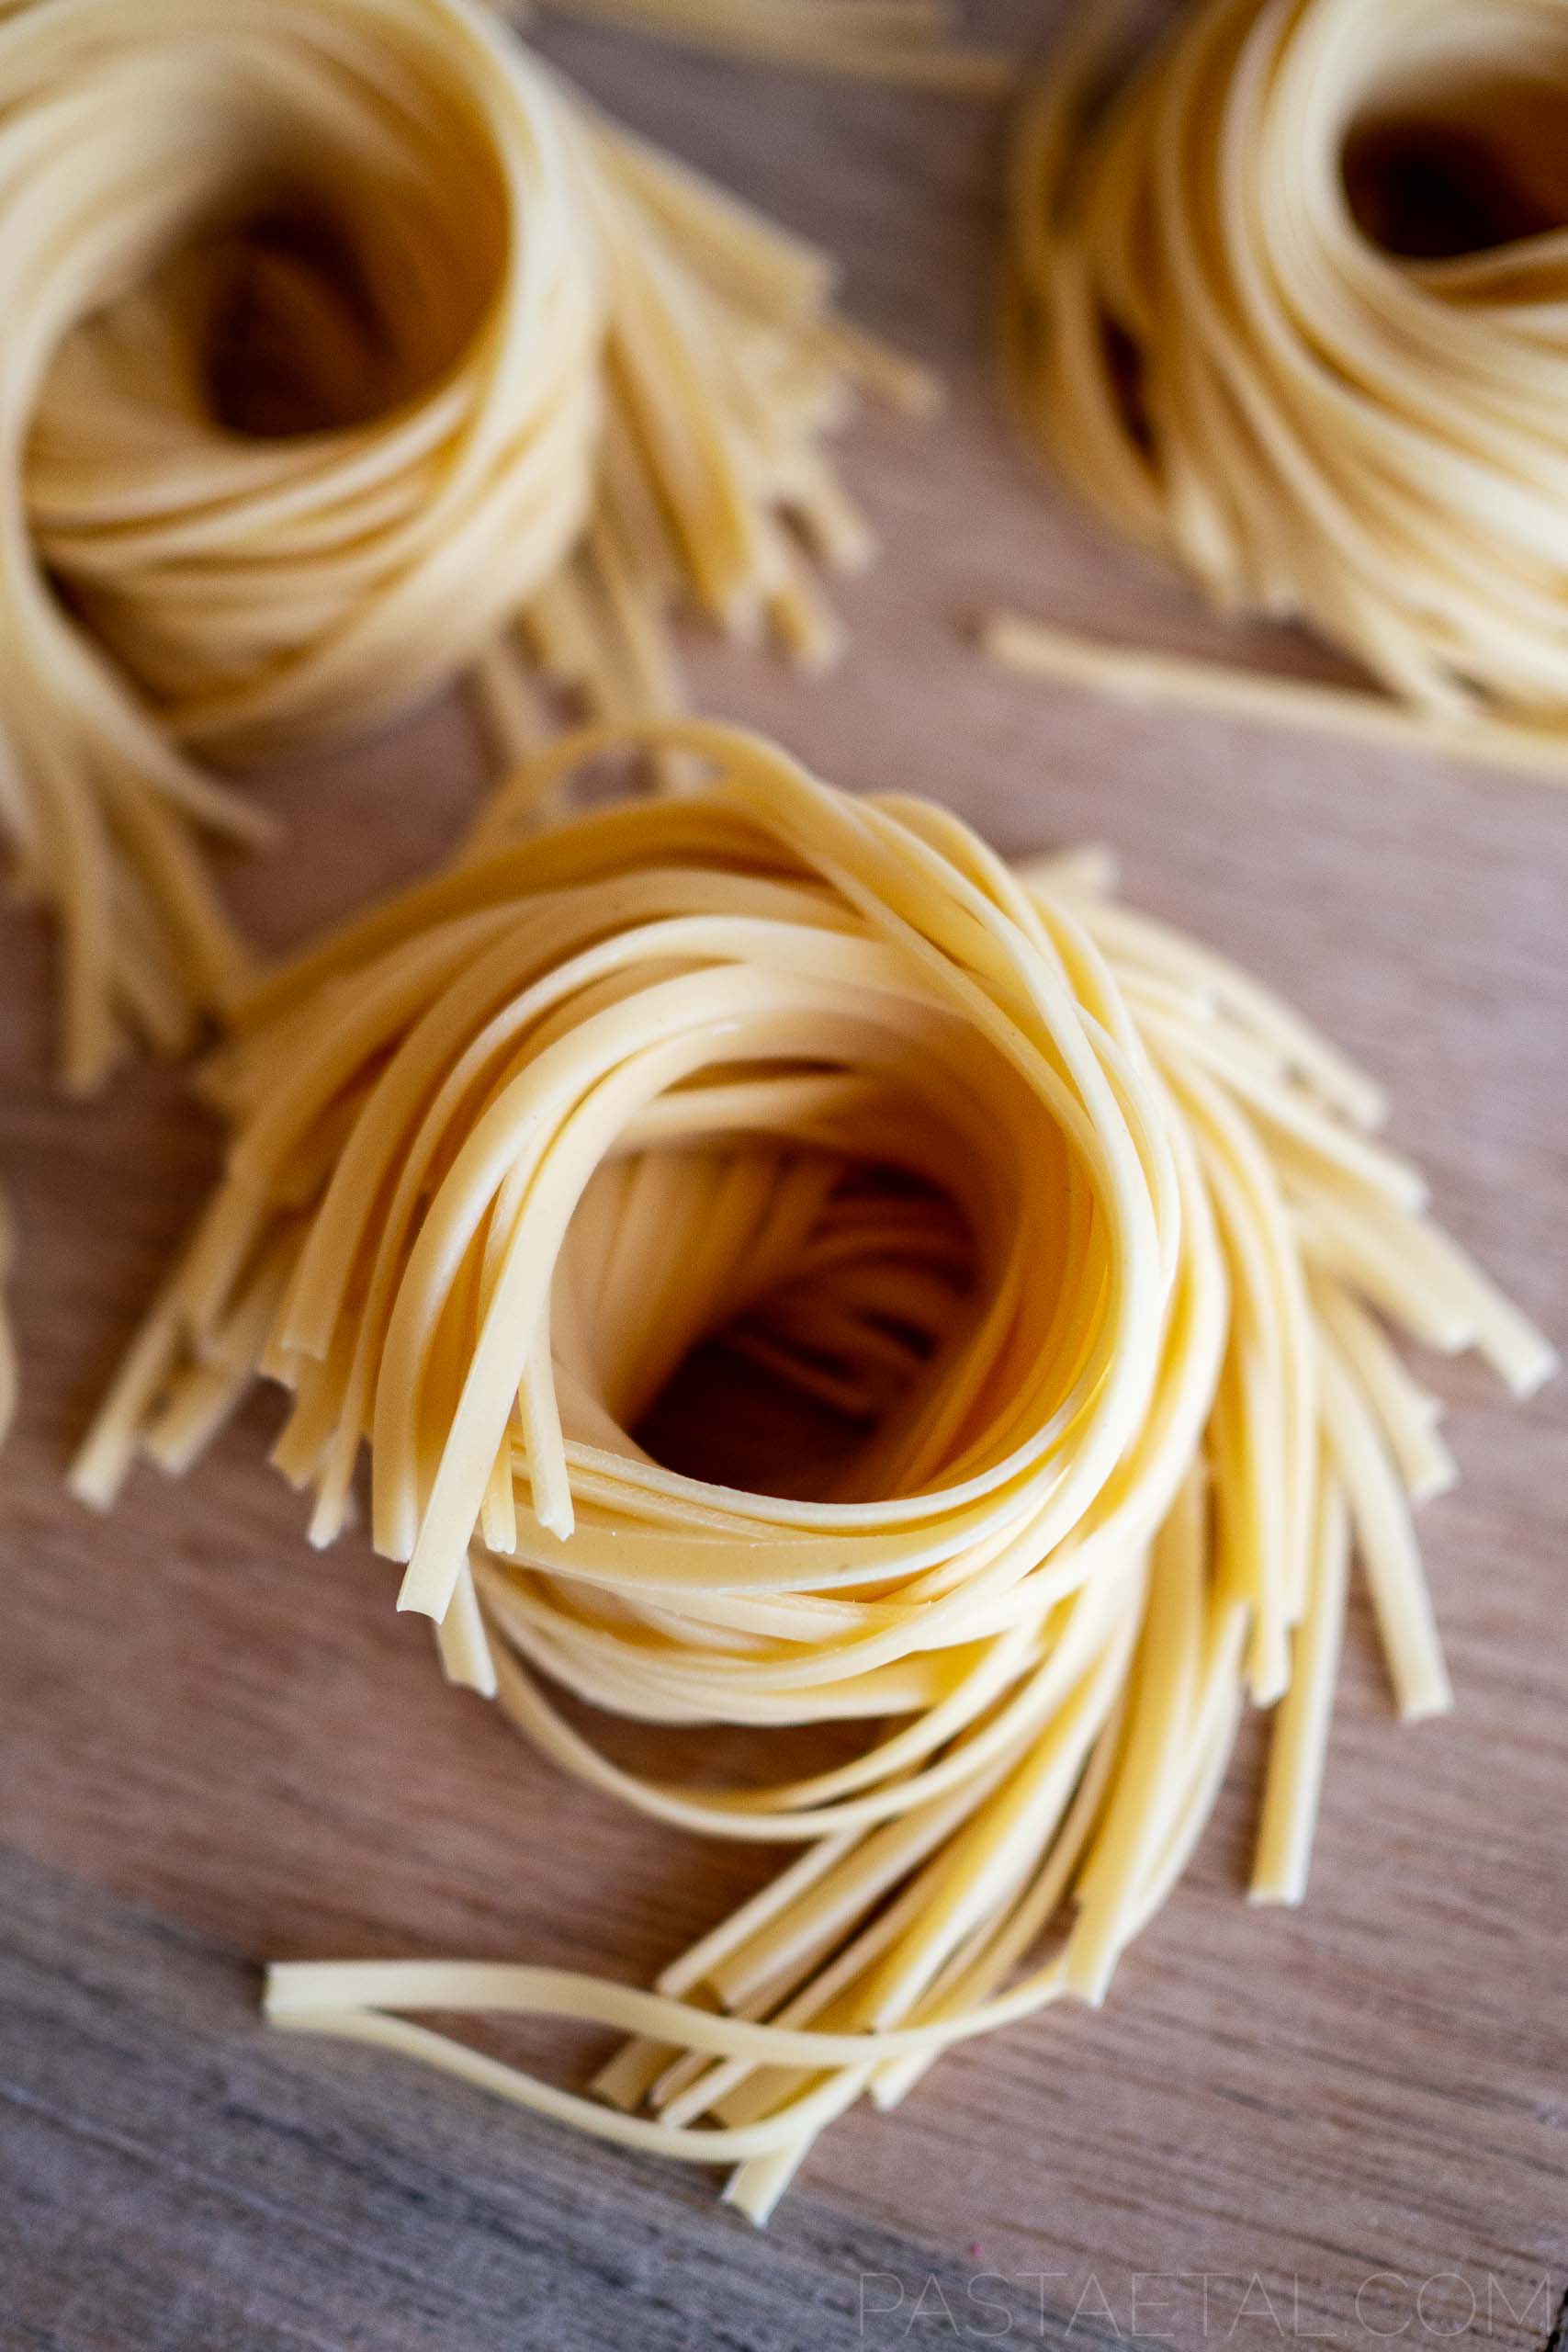 Spaghetti alla Chitarra with Capsicum and Homemade Tuna in Oil